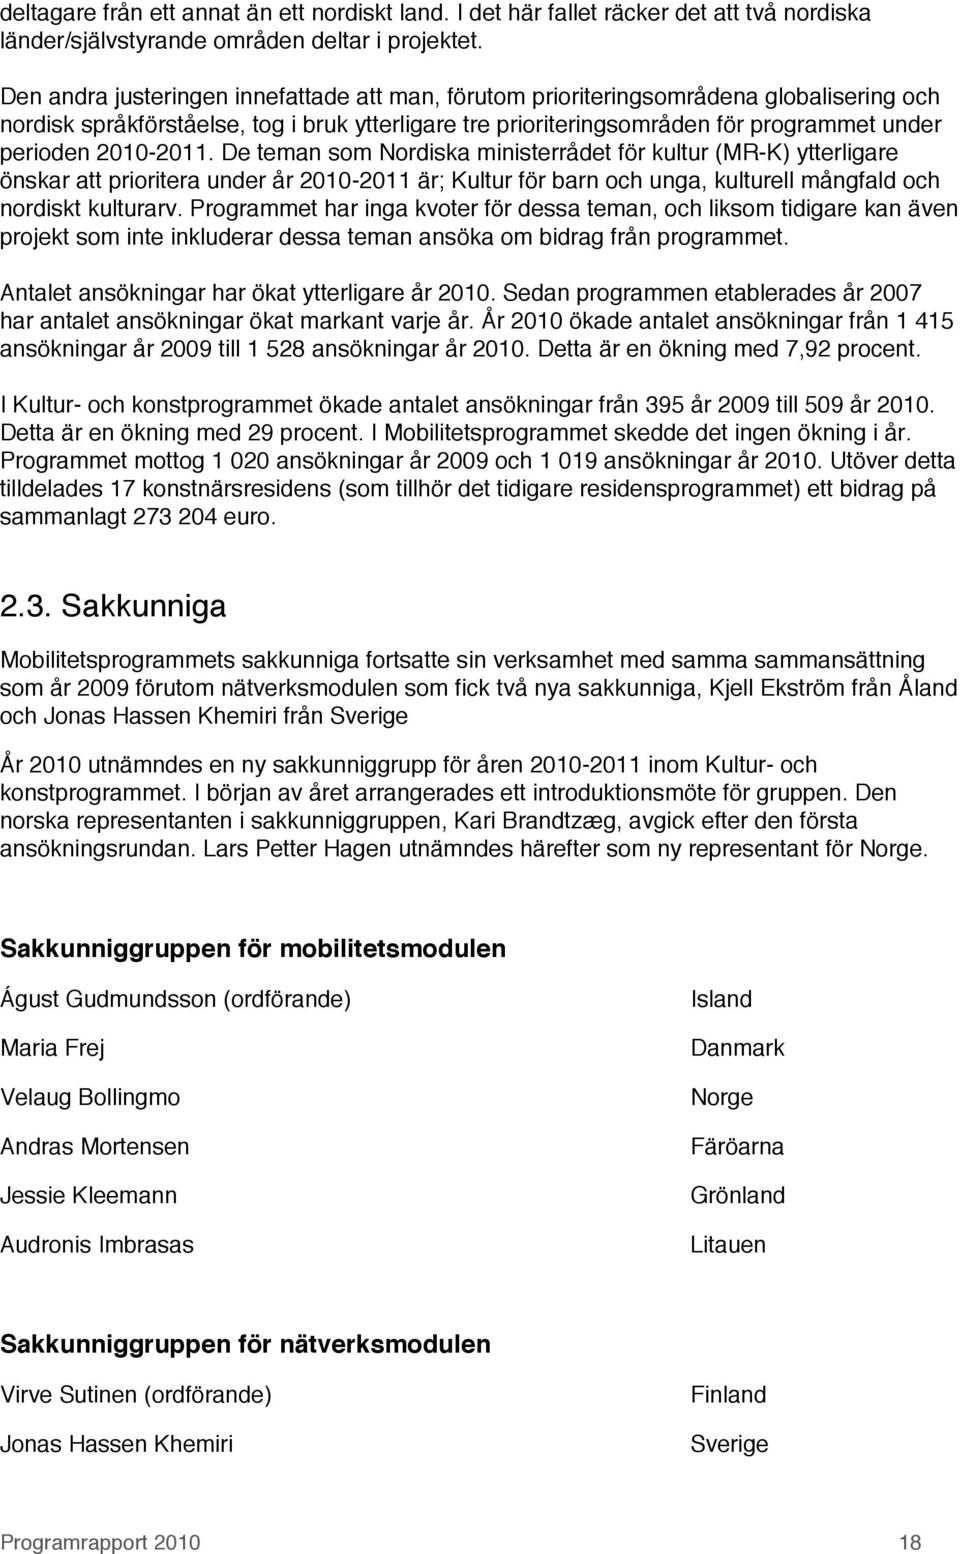 2010-2011. De teman som Nordiska ministerrådet för kultur (MR-K) ytterligare önskar att prioritera under år 2010-2011 är; Kultur för barn och unga, kulturell mångfald och nordiskt kulturarv.